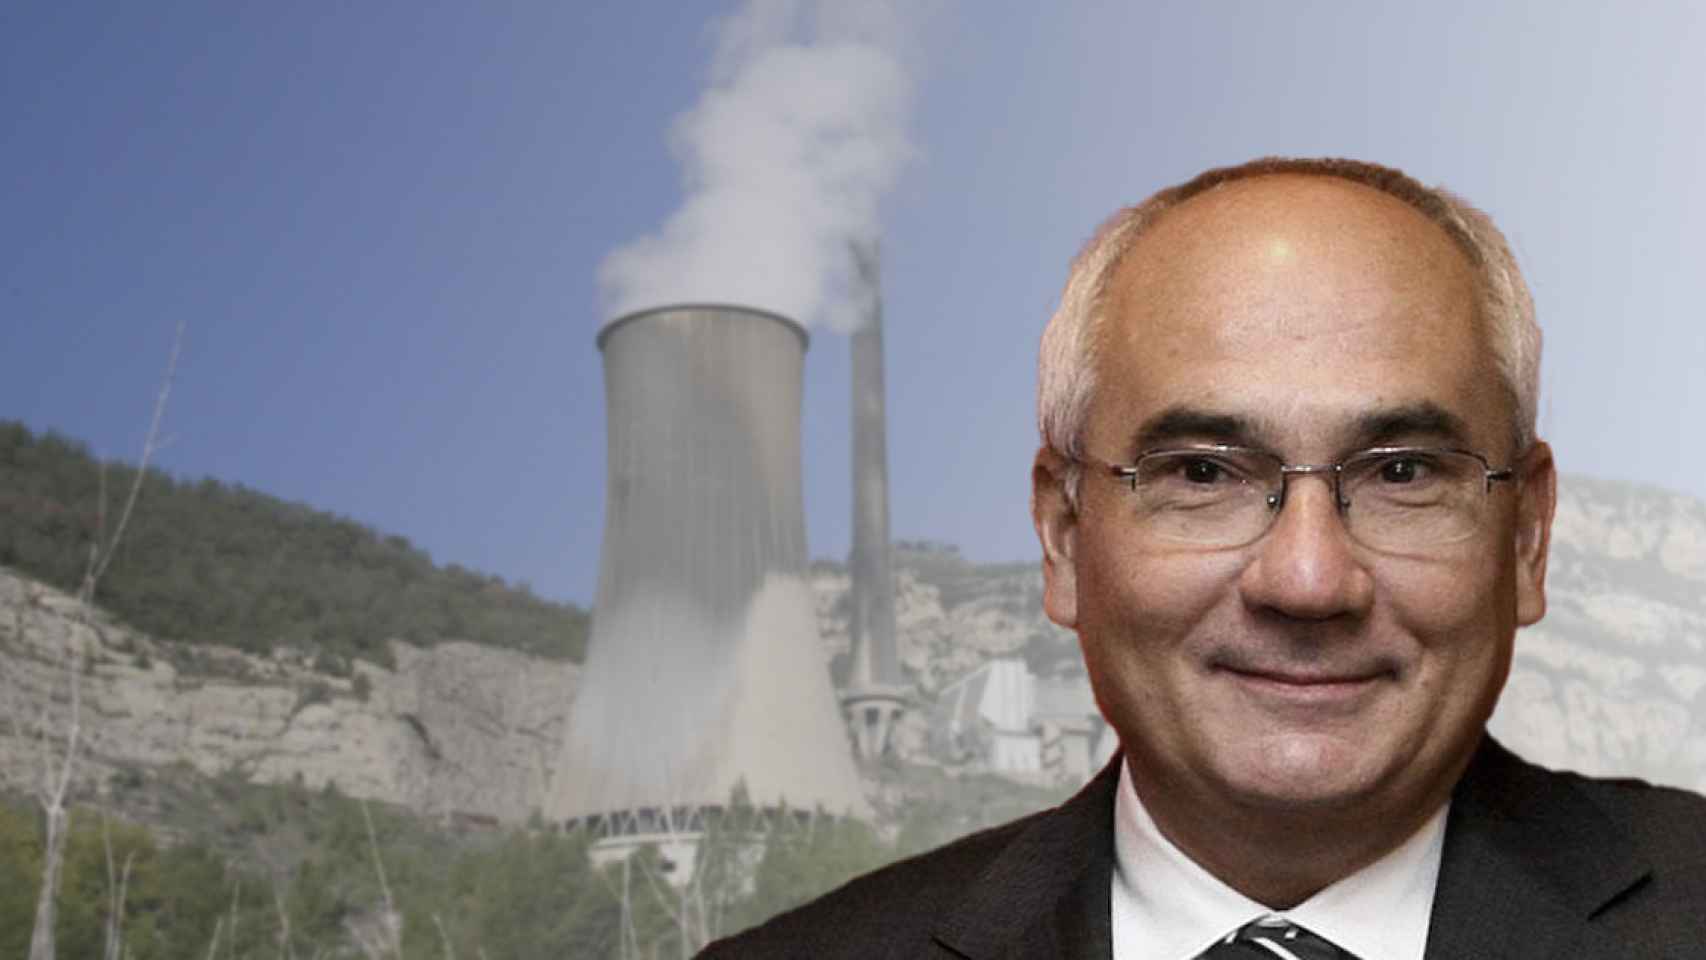 El exdirector general de CatalunyaCaixa, Adolf Todó, se involucra en la operación para remodelar la térmica de Cercs / FOTOMONTAJE CG